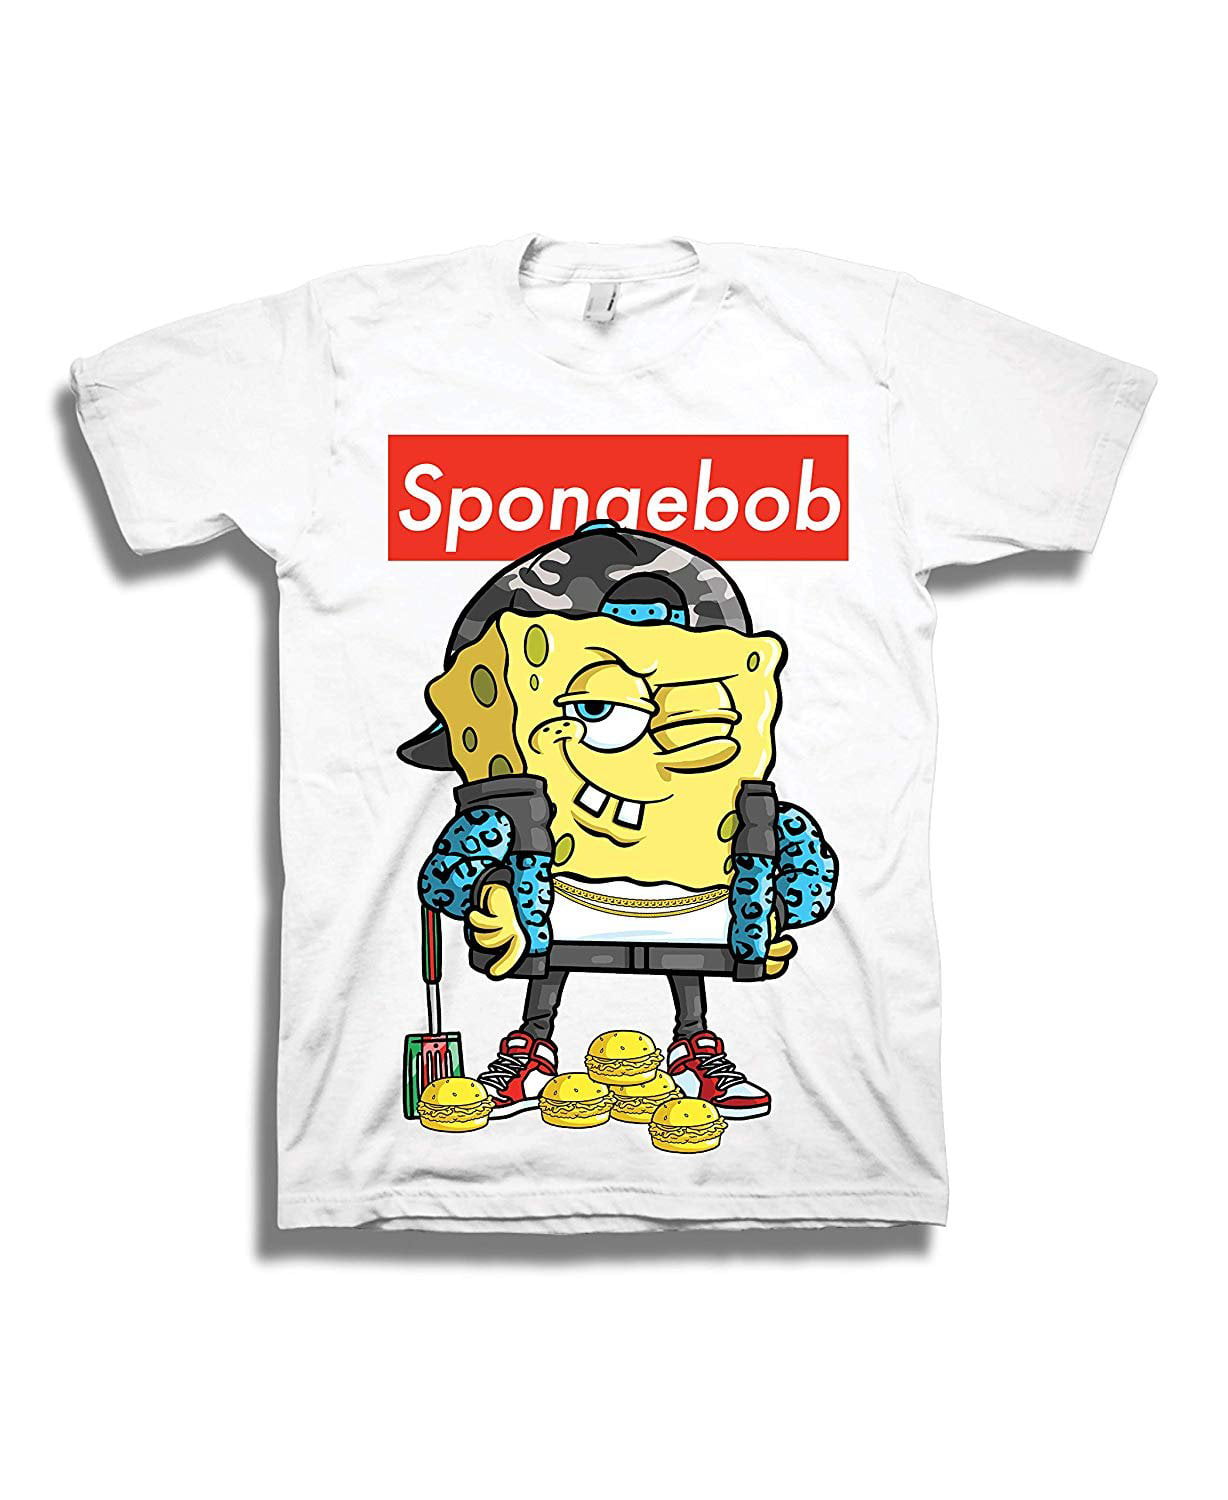 Nickelodeon - Mens Spongebob Squarepants Shirt - Spongebob Supreme